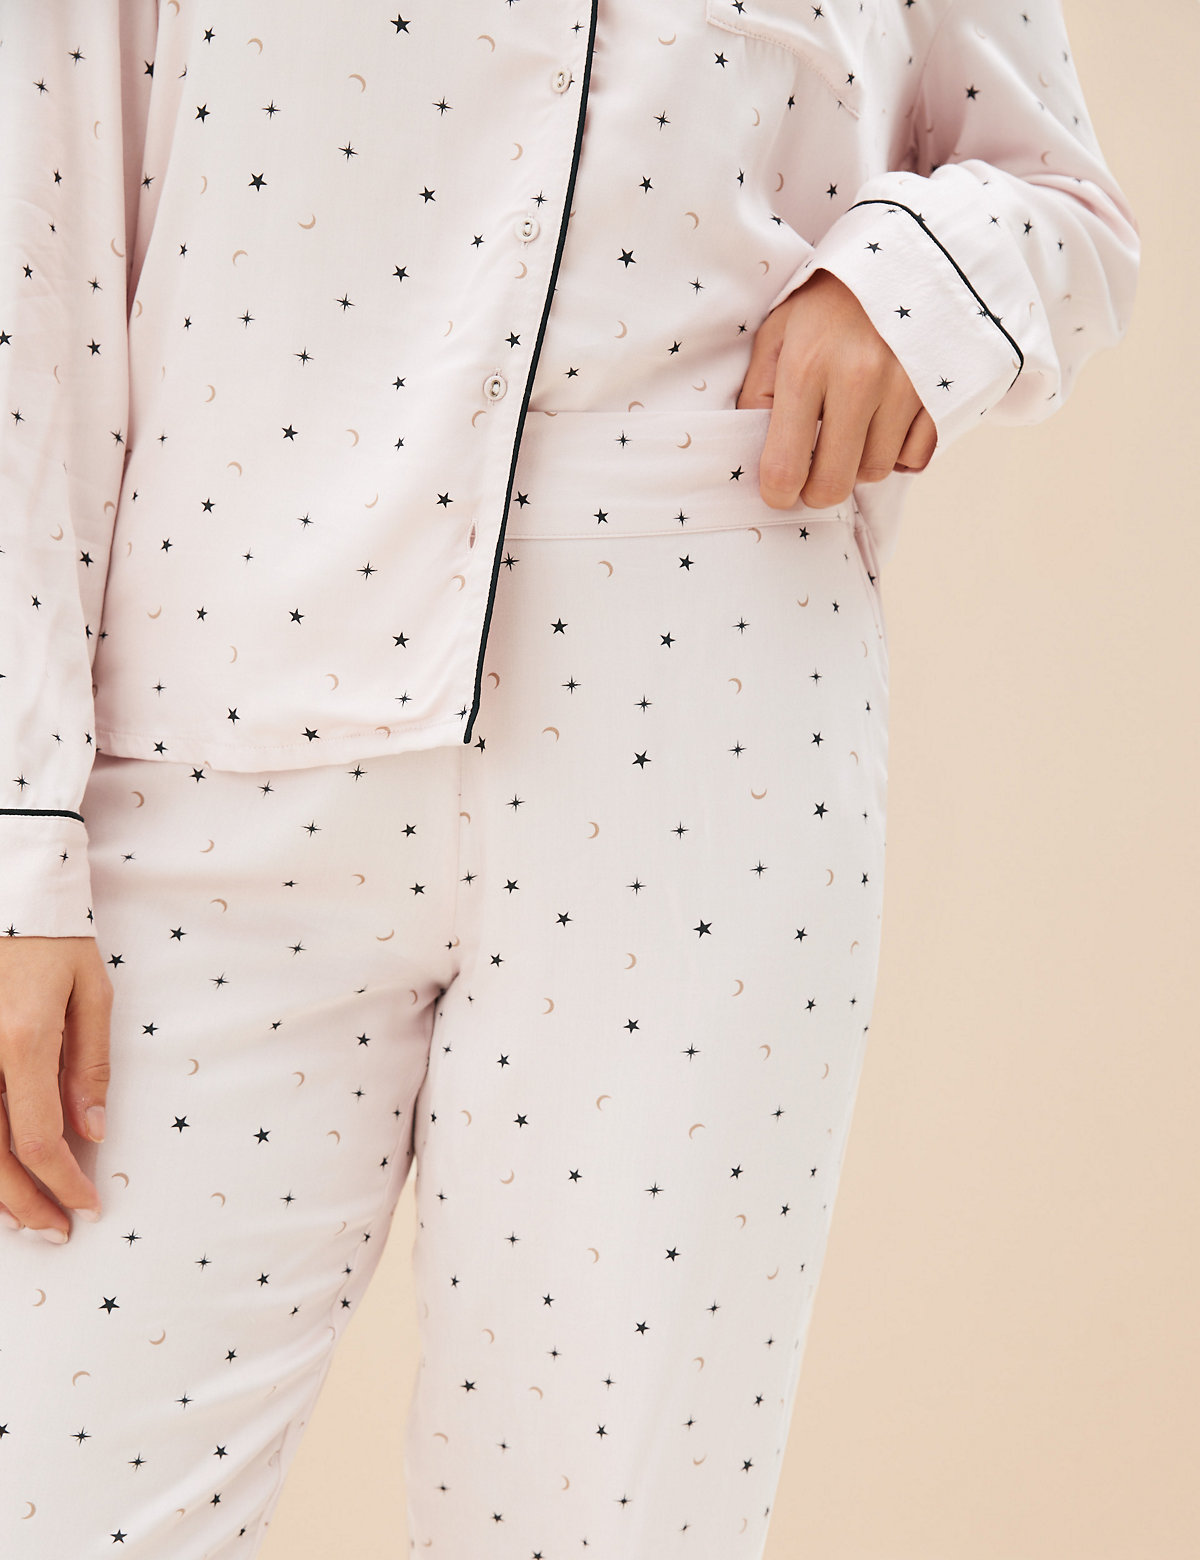 Star Print Revere Collar Pyjama Set